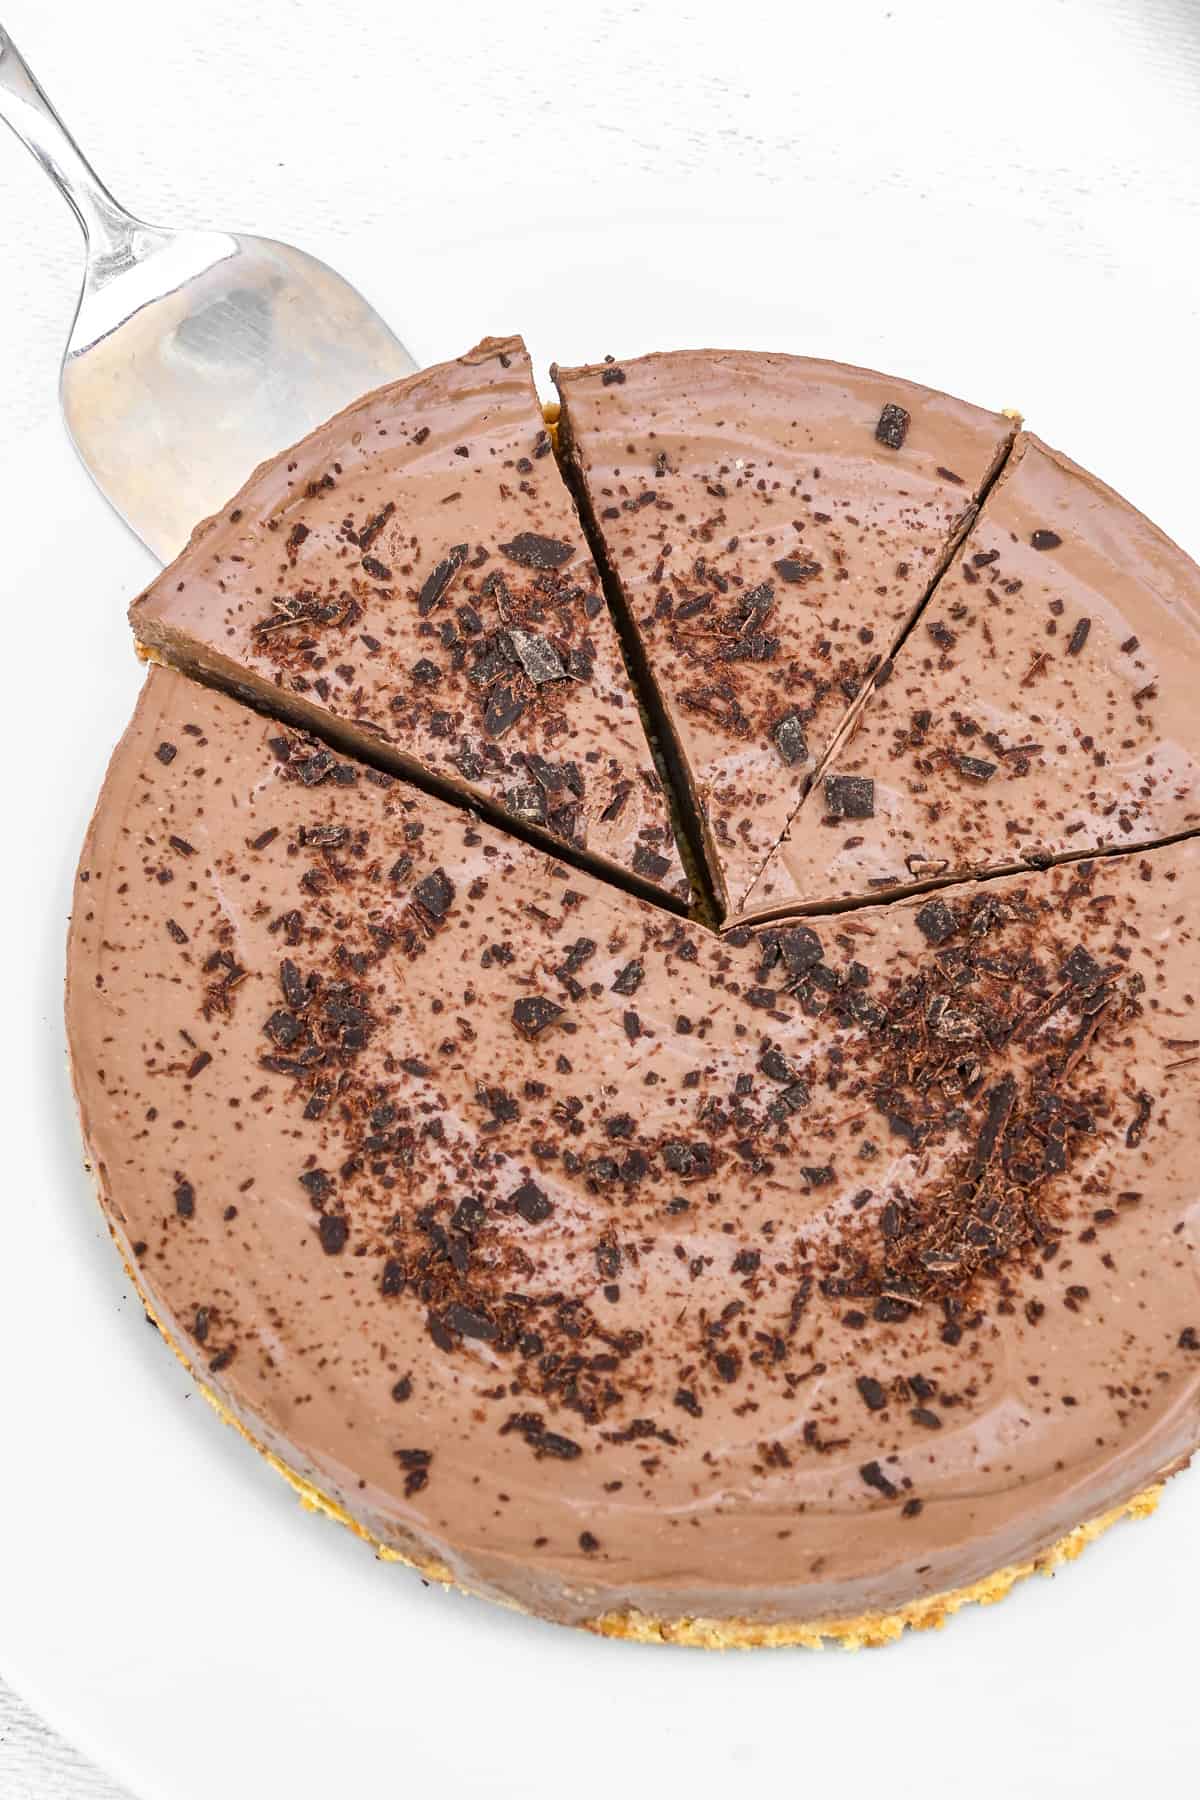 Μια τάρτα από πάνω προς τα κάτω, πασπαλισμένη με τρίμματα σοκολάτας.  Ένα κομμάτι αφαιρείται χρησιμοποιώντας έναν διακομιστή κέικ.